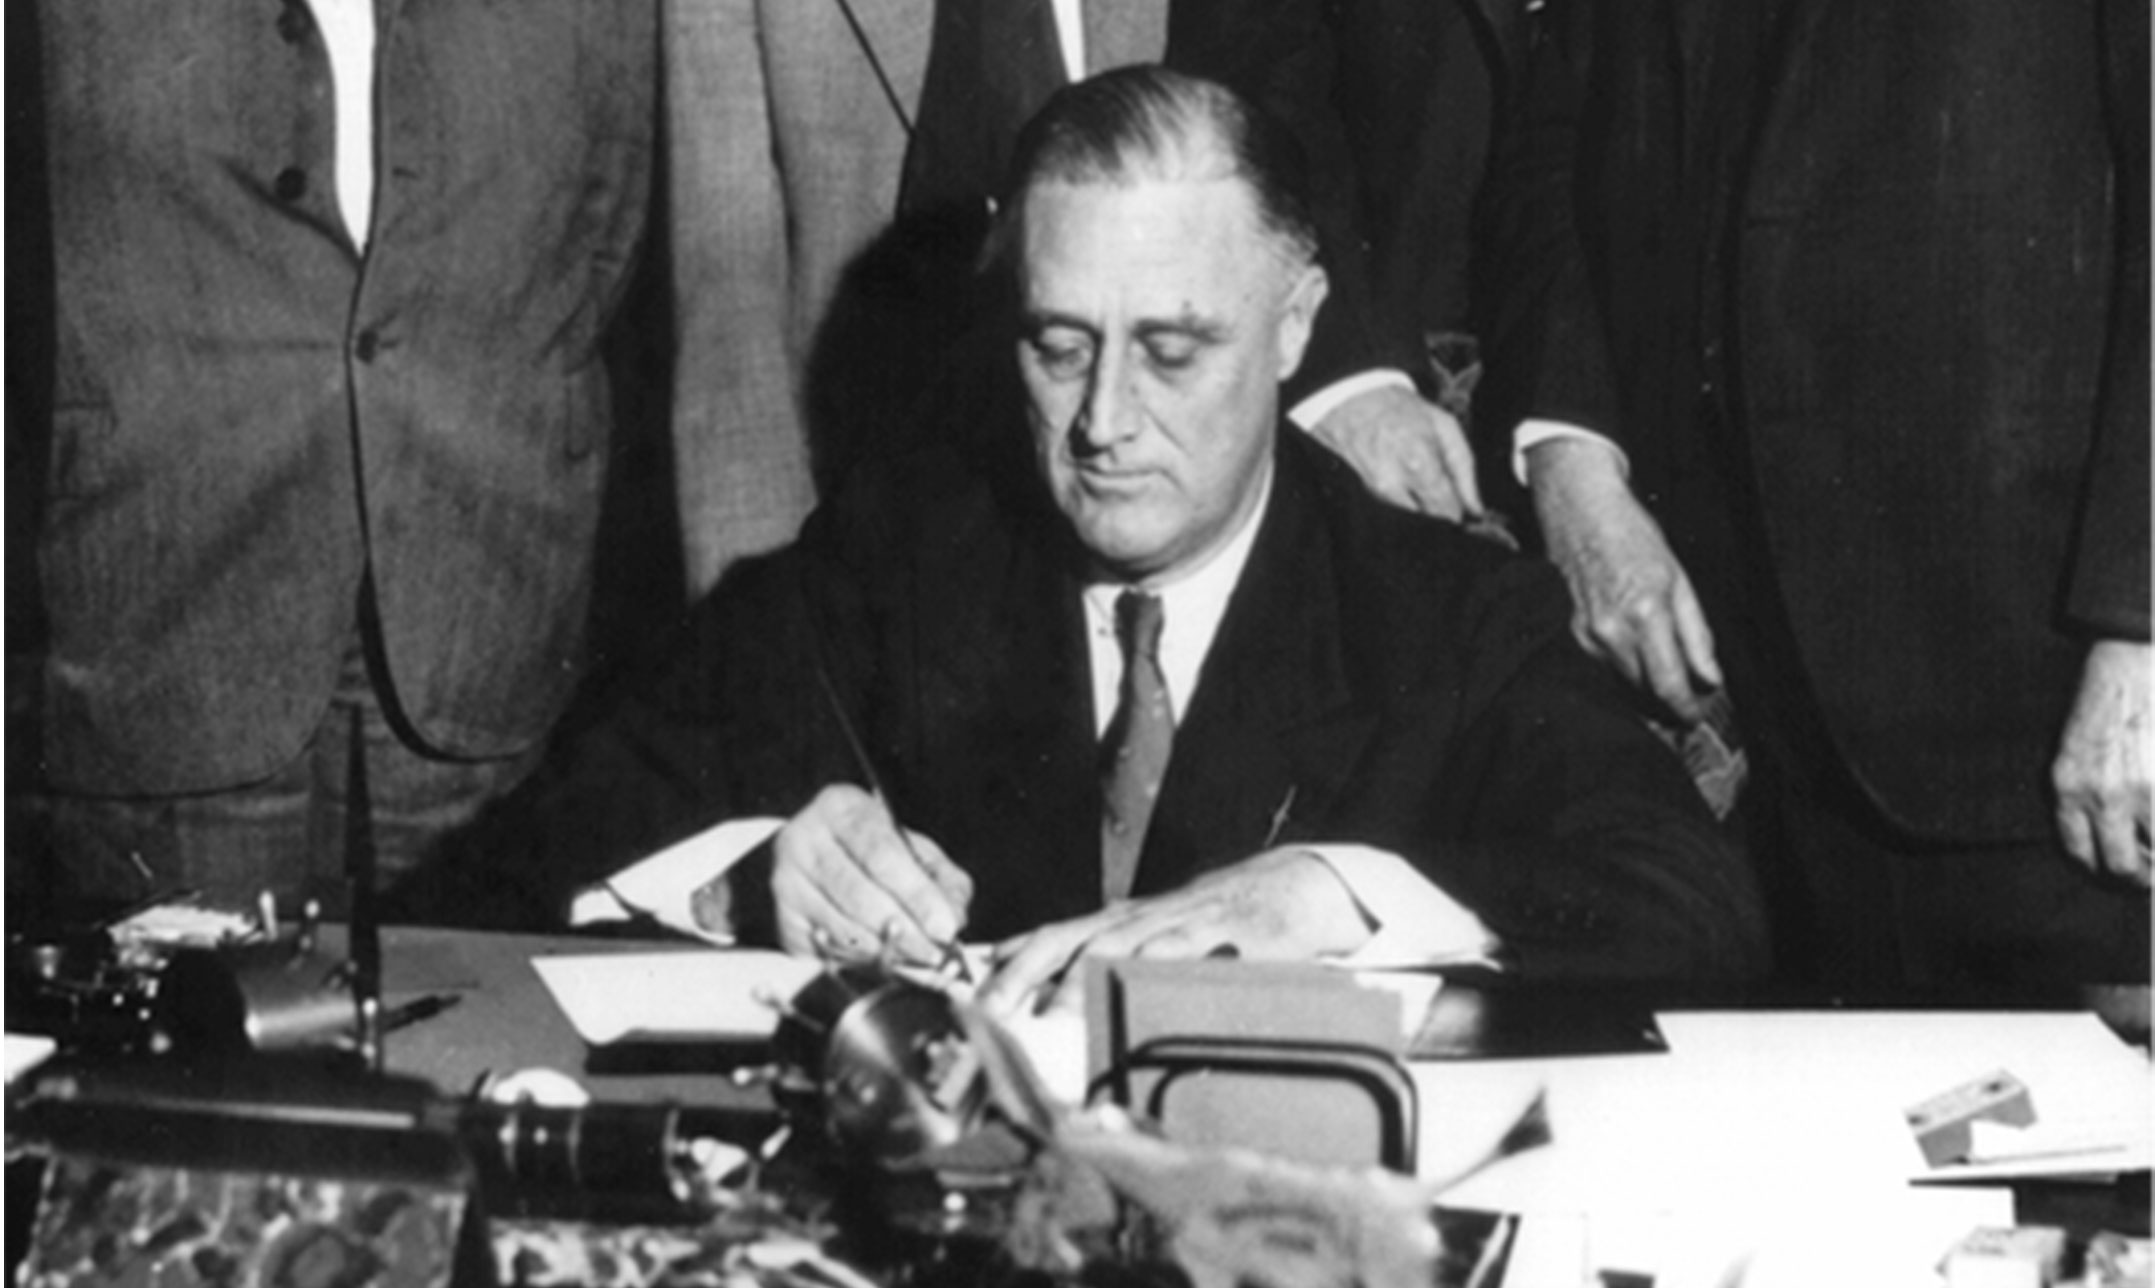 Roosevelt firma la Ley TVA, que estableció la Autoridad del Valle de Tennessee.